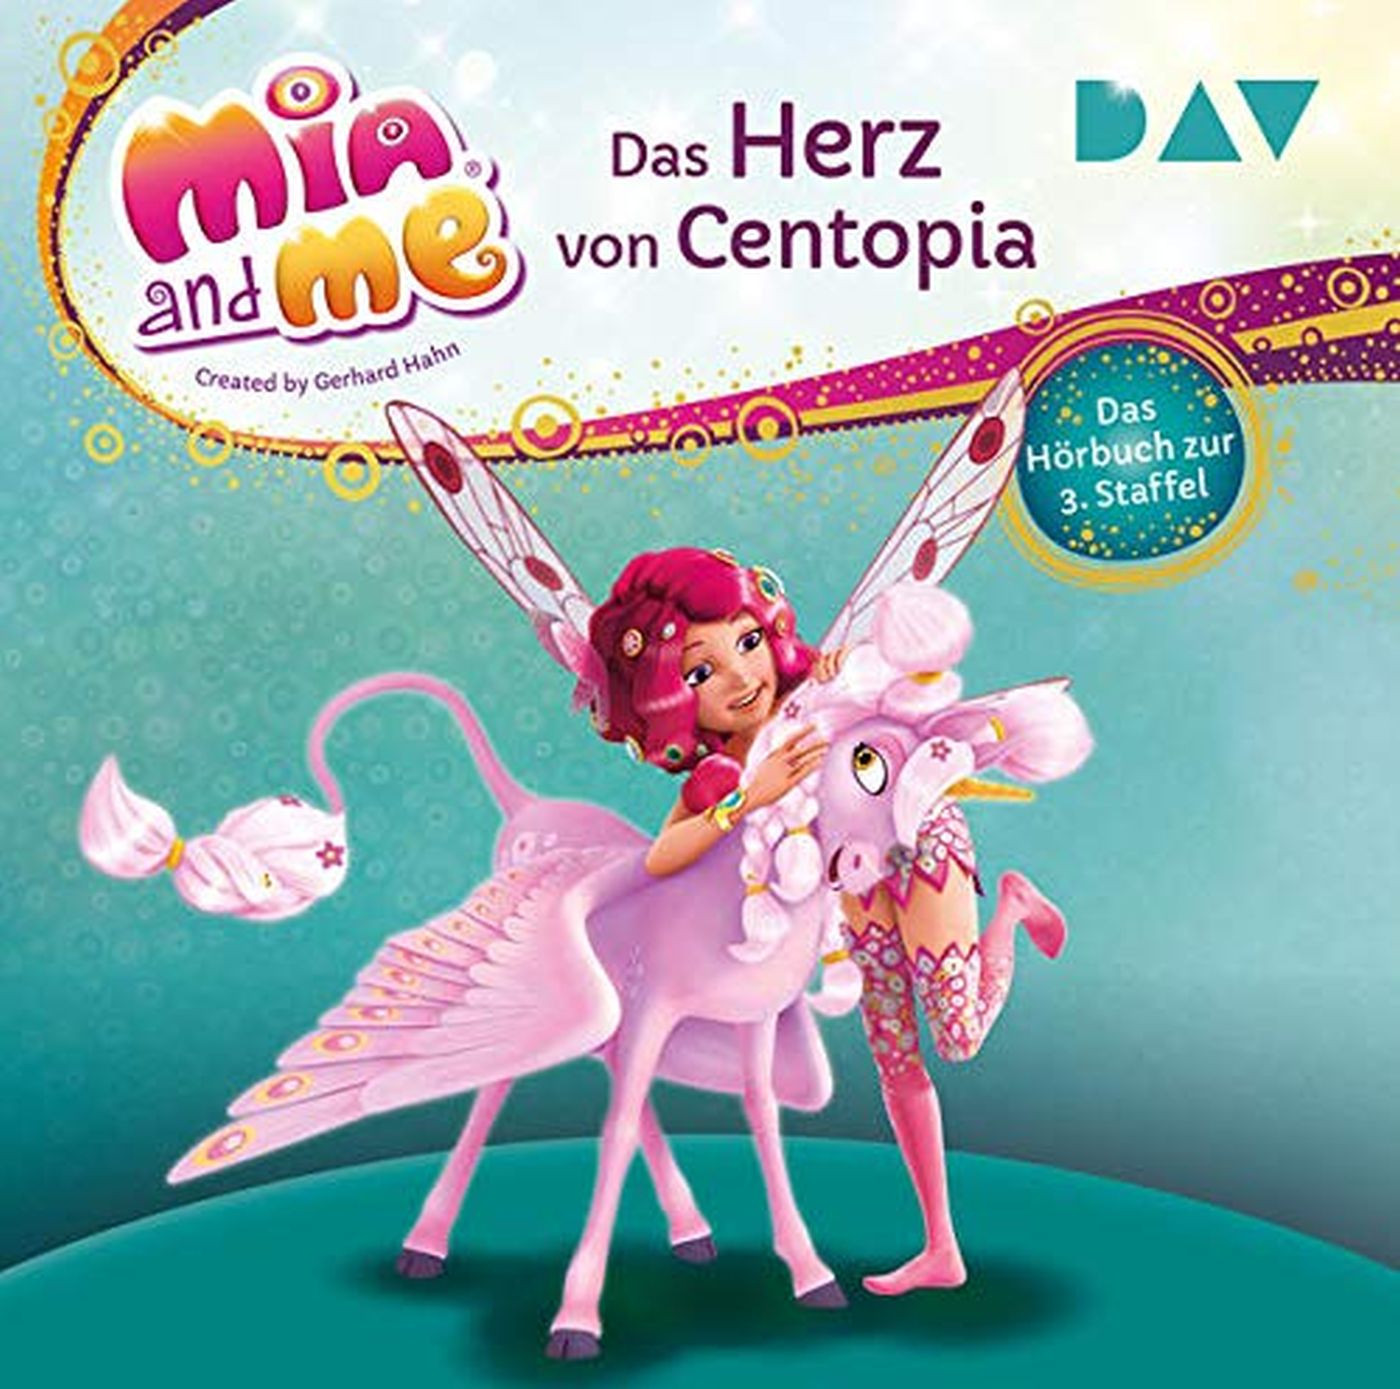 Mia and me: Das Herz von Centopia – Das Hörbuch zur 3. Staffel